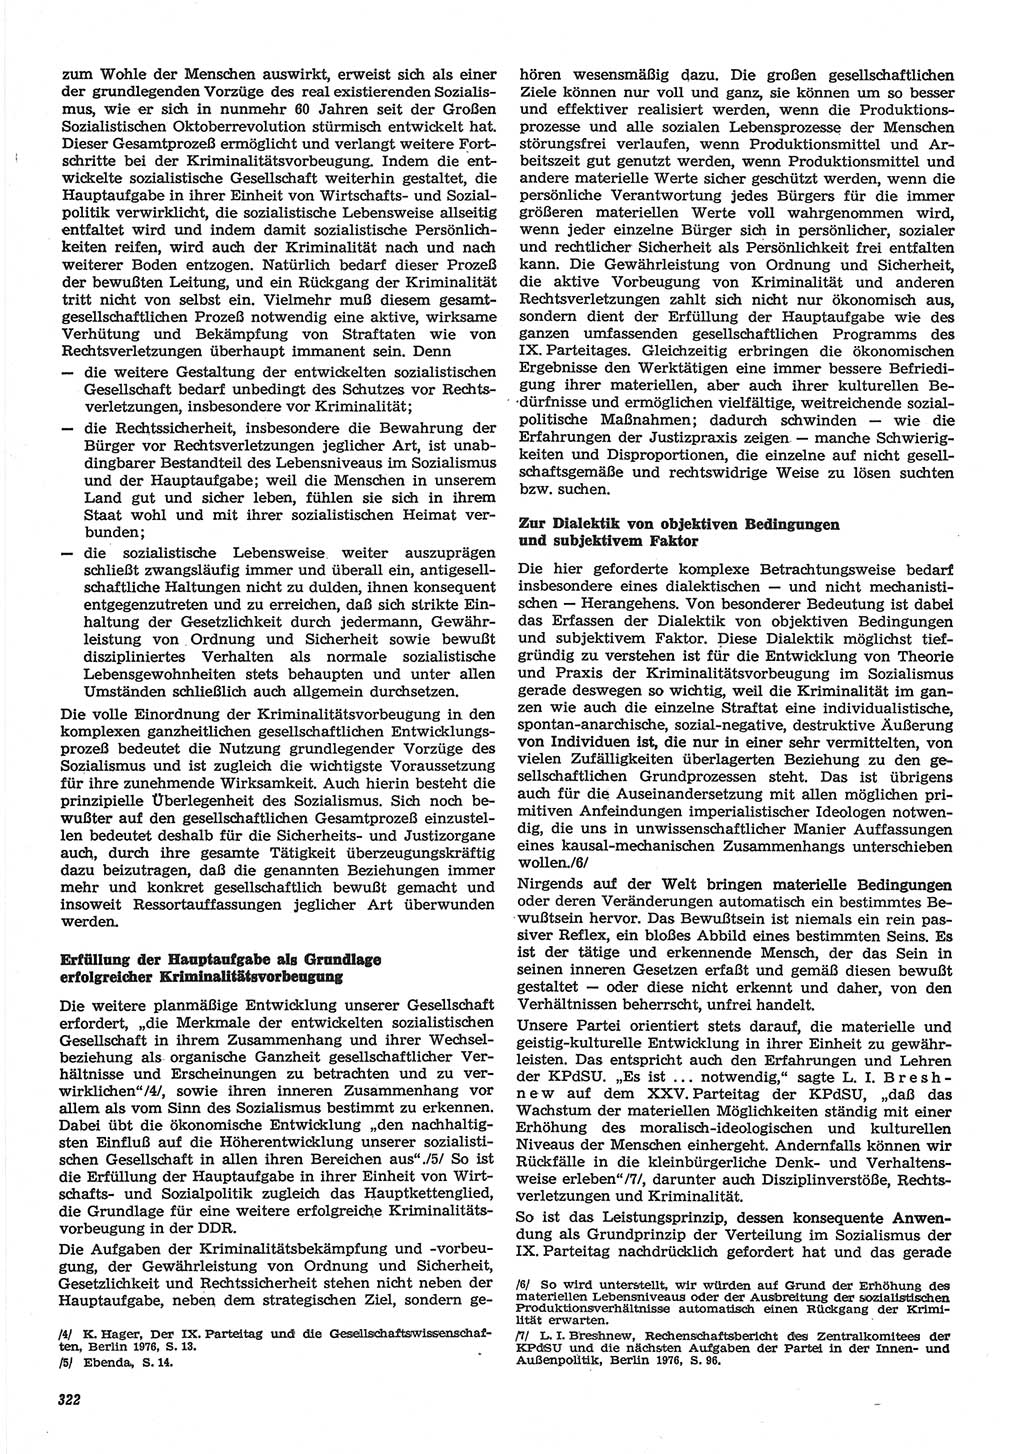 Neue Justiz (NJ), Zeitschrift für Recht und Rechtswissenschaft-Zeitschrift, sozialistisches Recht und Gesetzlichkeit, 31. Jahrgang 1977, Seite 322 (NJ DDR 1977, S. 322)